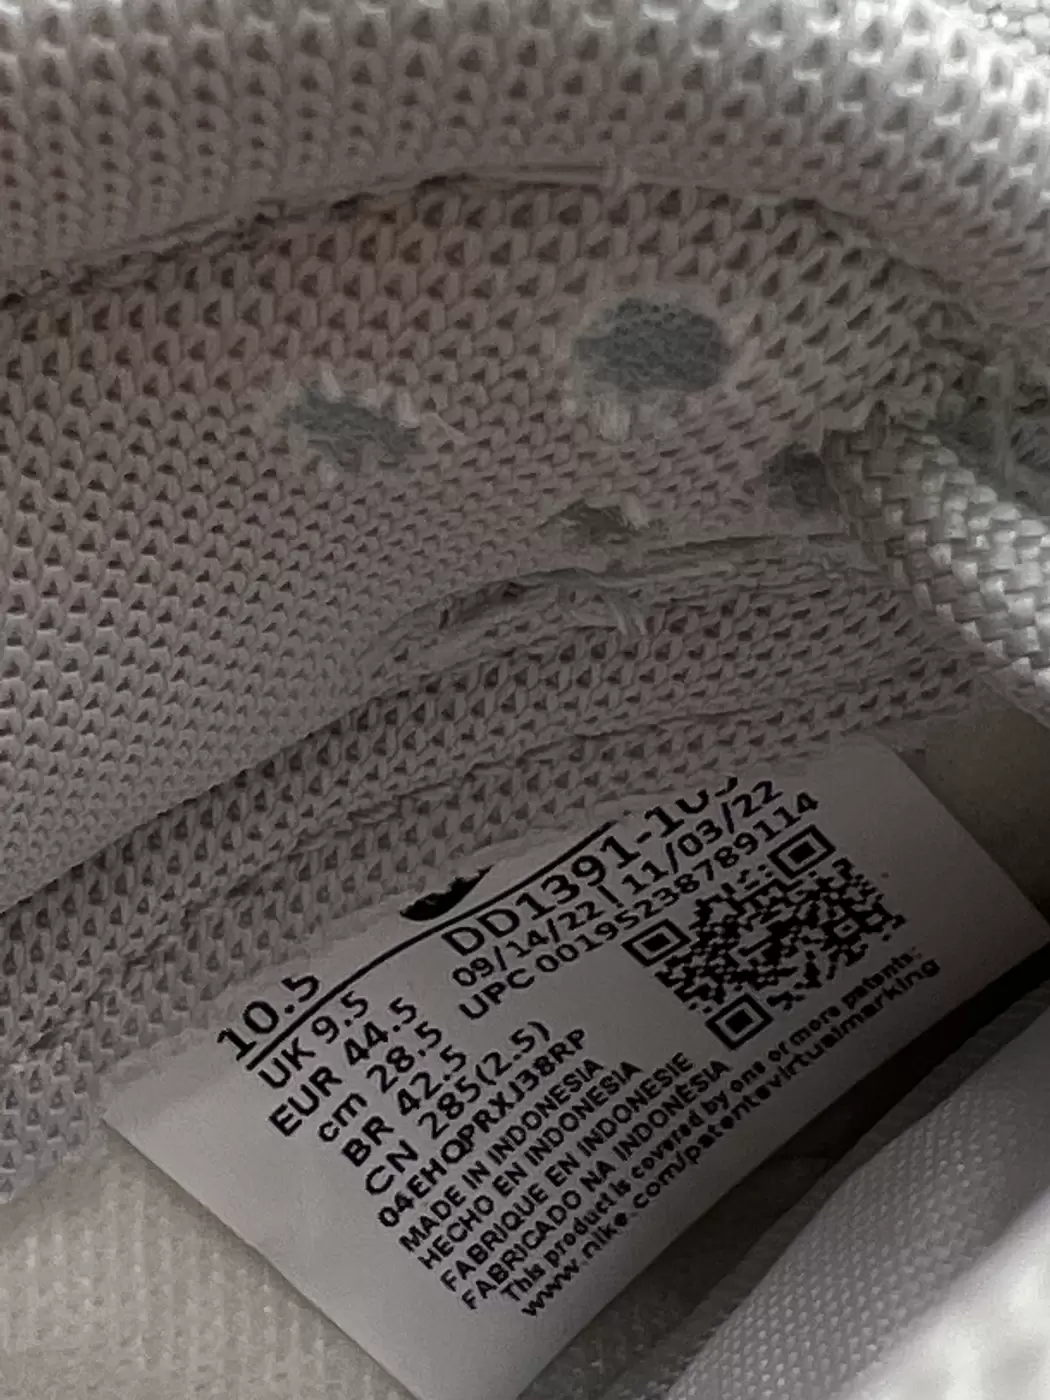 26330 - Nike Dunk Low Grey Fog | Item Details - AfterMarket